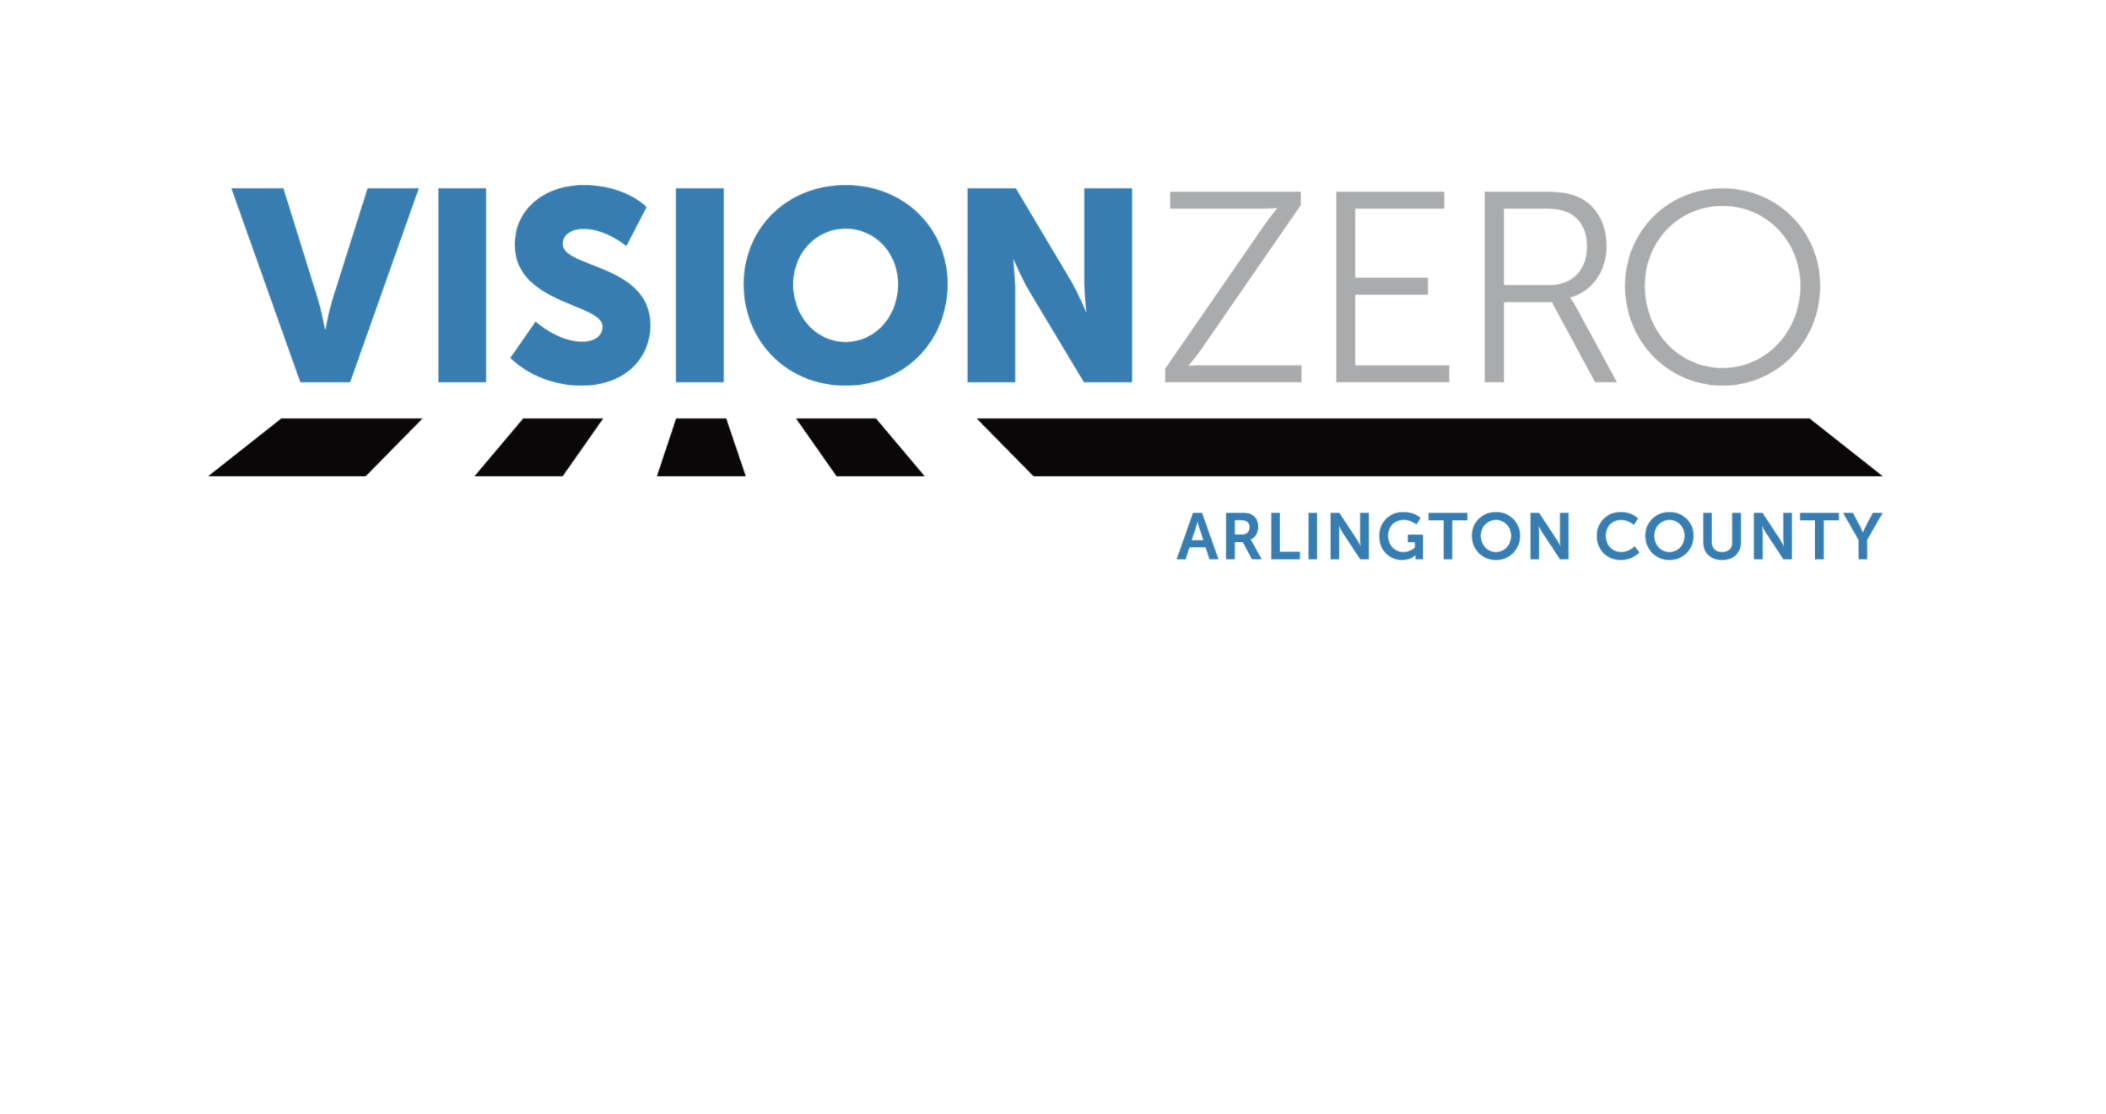 Vision Zero Arlington санал хүсэлтийн маягт